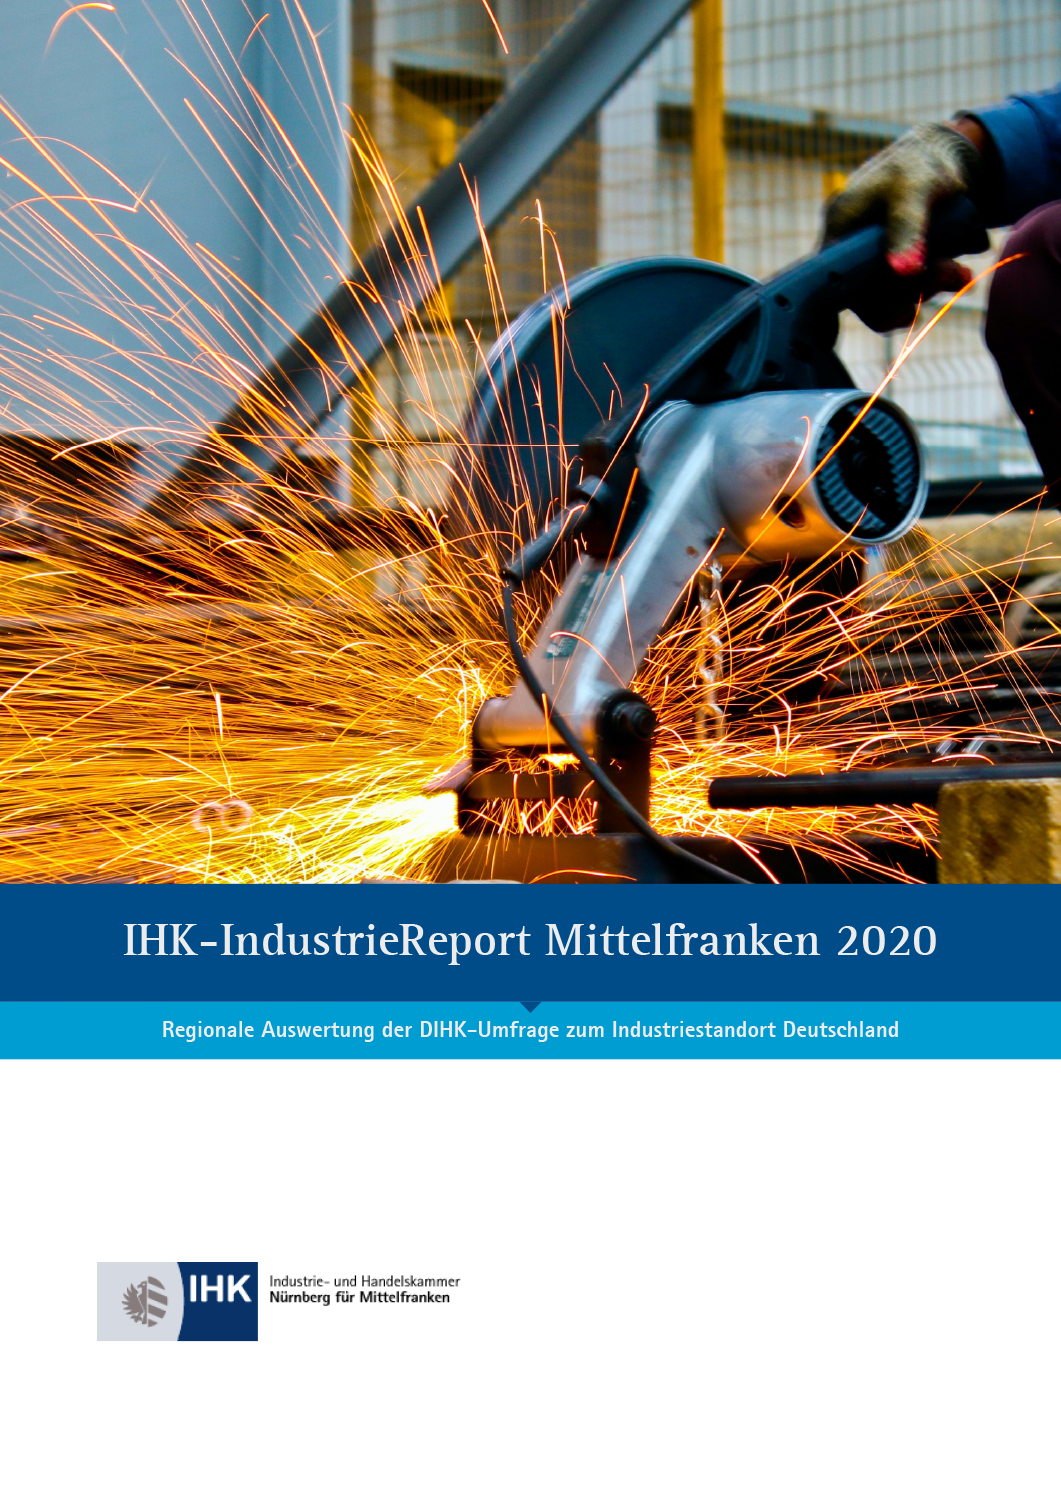 IHK-IndustrieReport Mittelfranken 2020